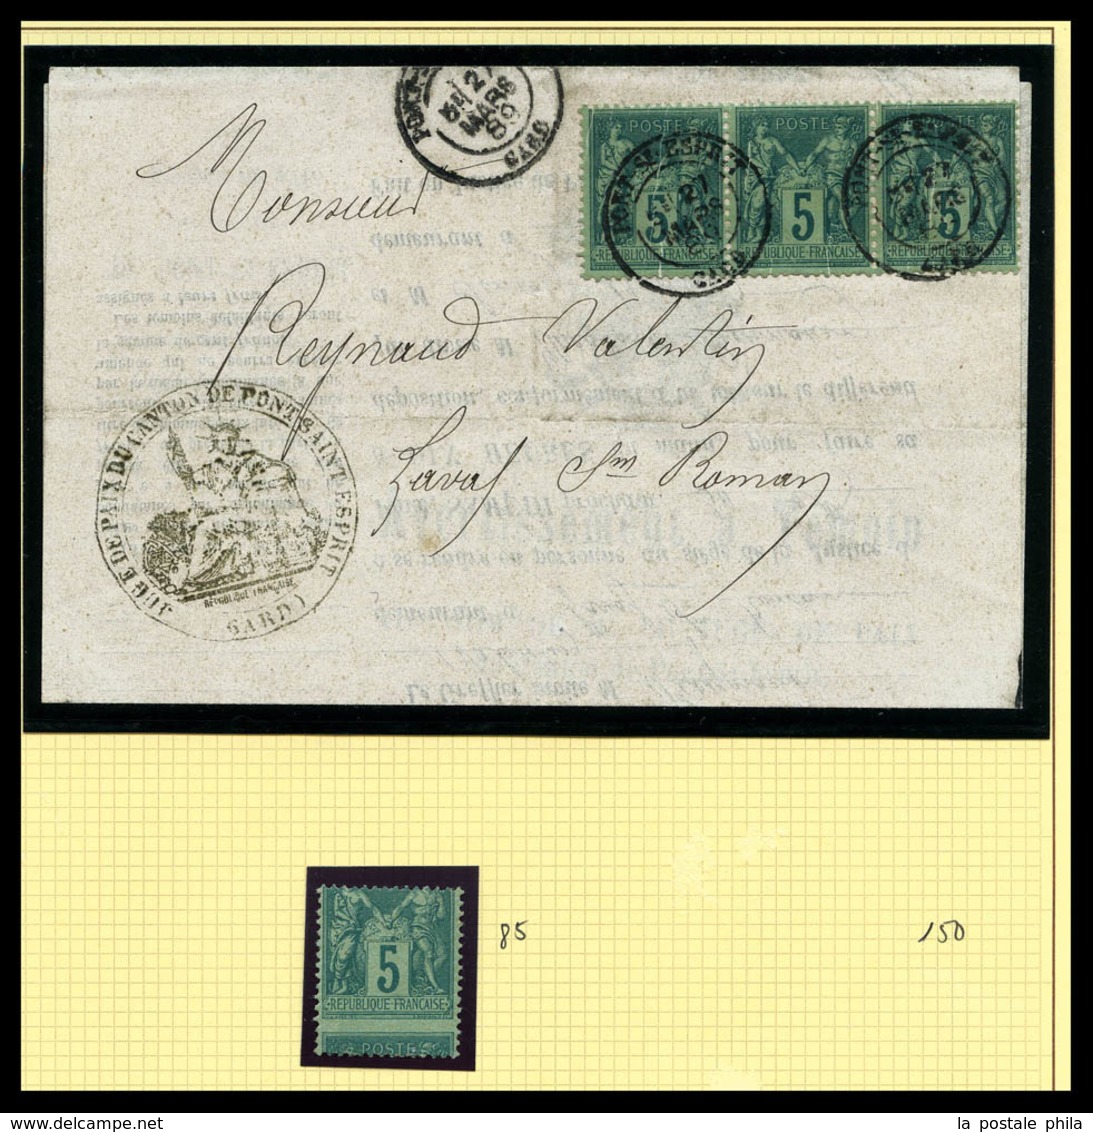 & 1876-1900, Sage, collection de timbres neufs, obl, lettres dont nuances, oblitérations, variétés preséntée sur pages d